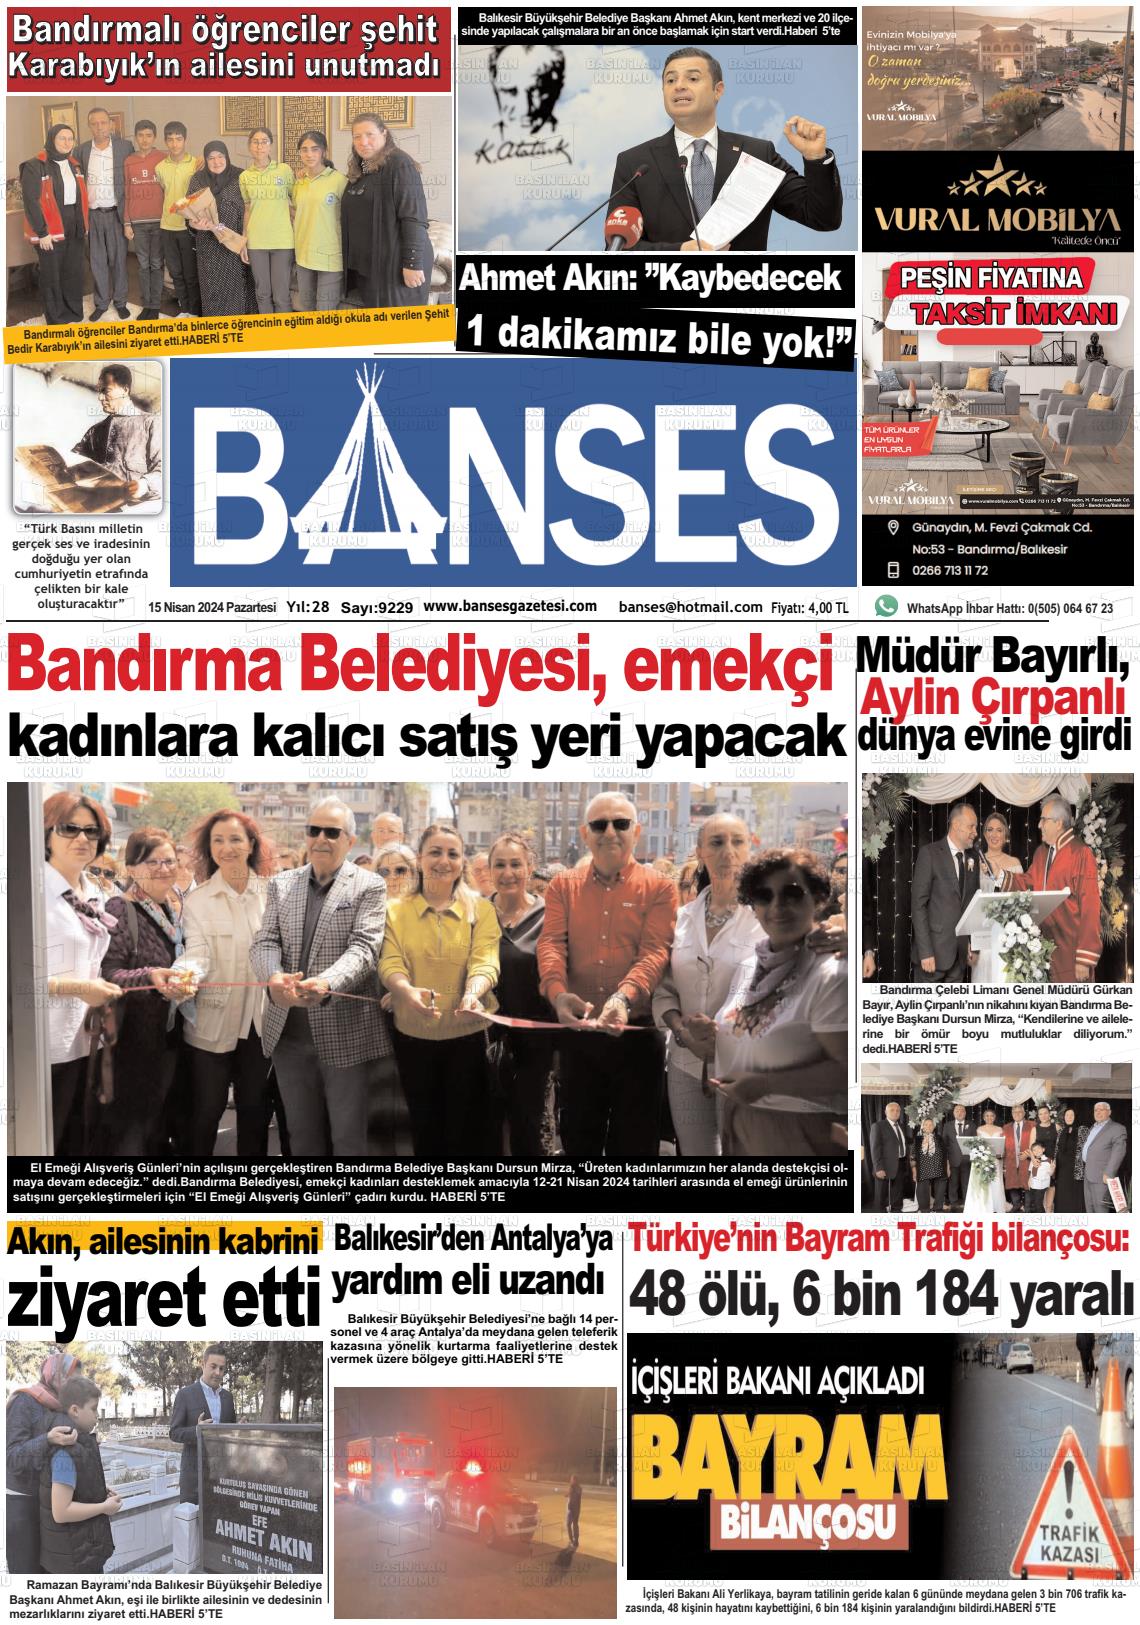 15 Nisan 2024 Banses Gazete Manşeti